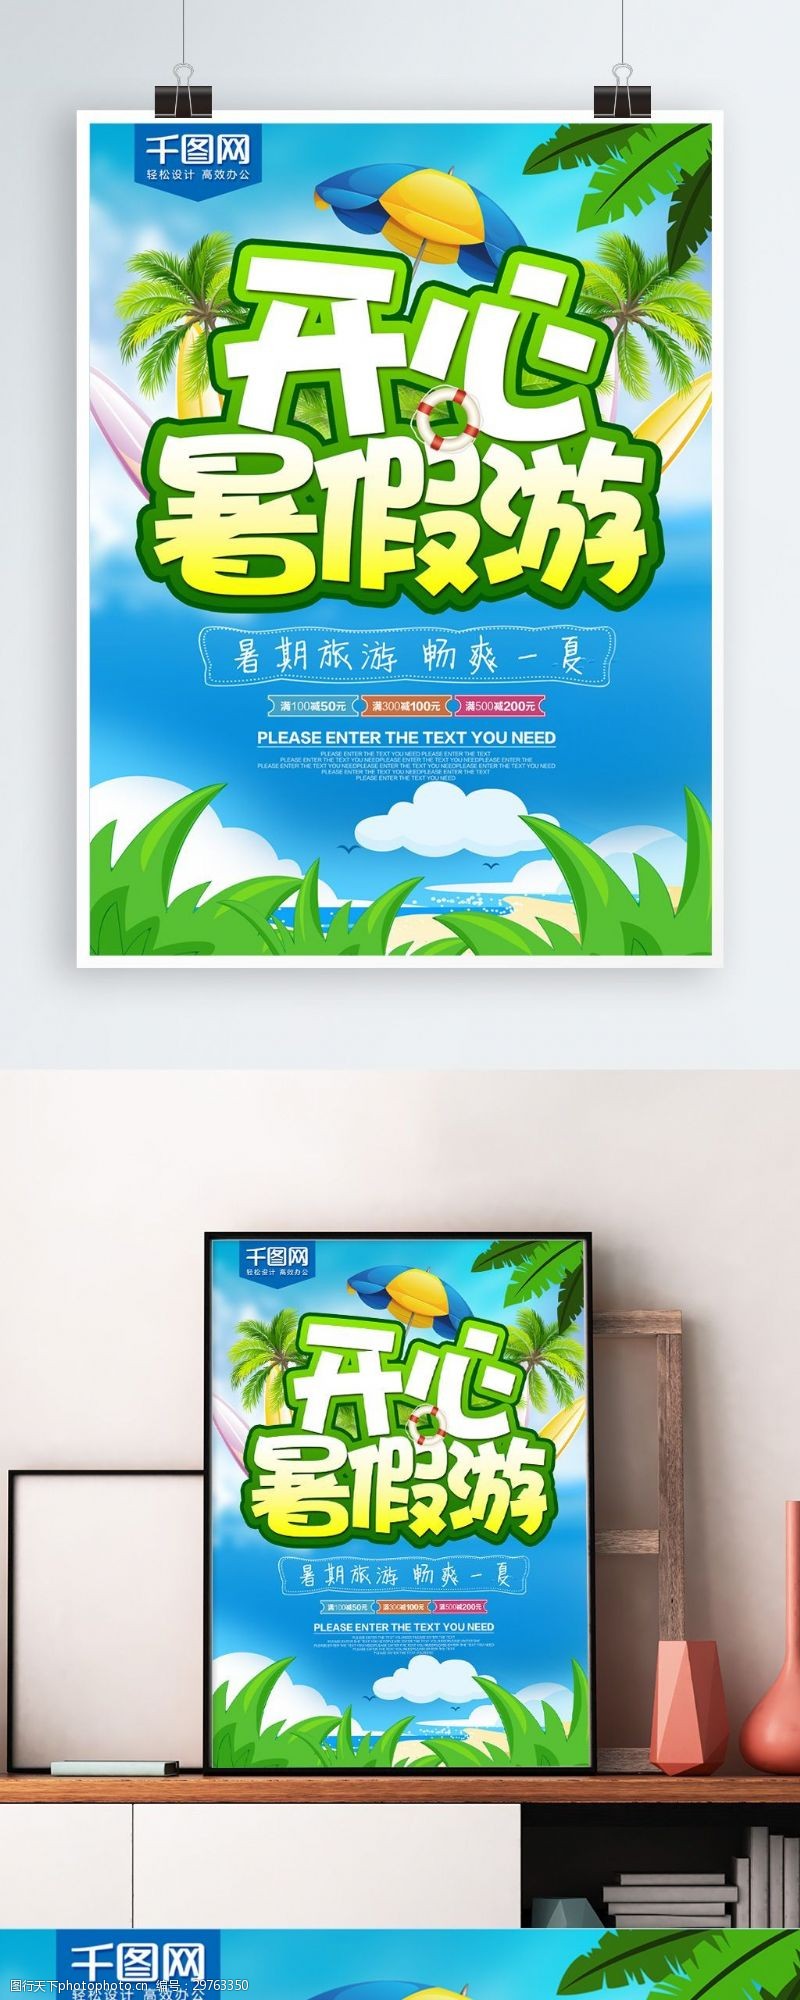 夏令营海报清新绿色开心暑假旅游海报